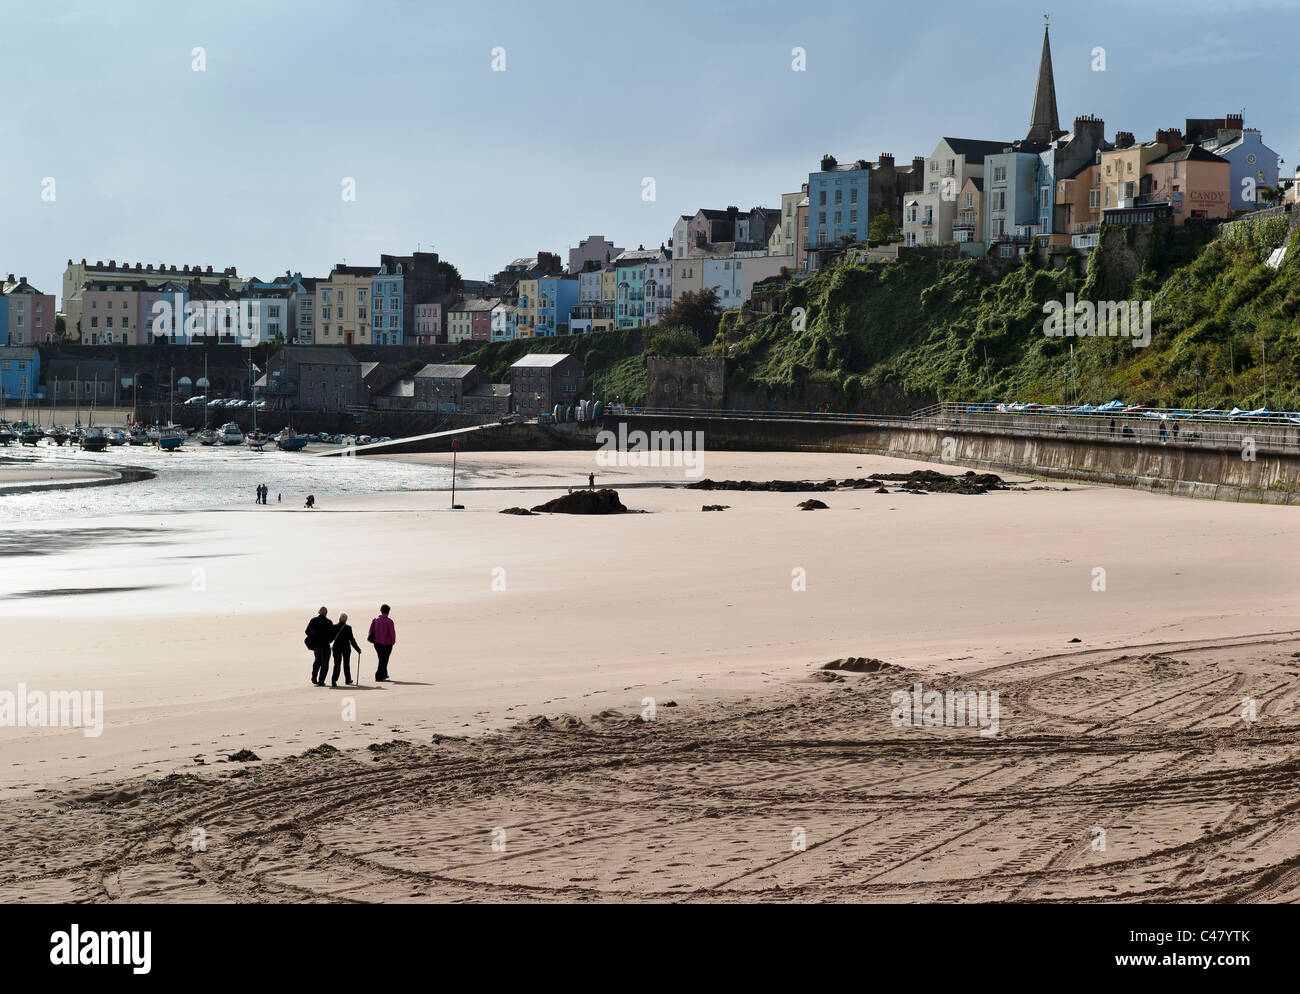 Les touristes se promenant sur la plage du nord au sud du Pays de Galles à Cardiff UK Banque D'Images